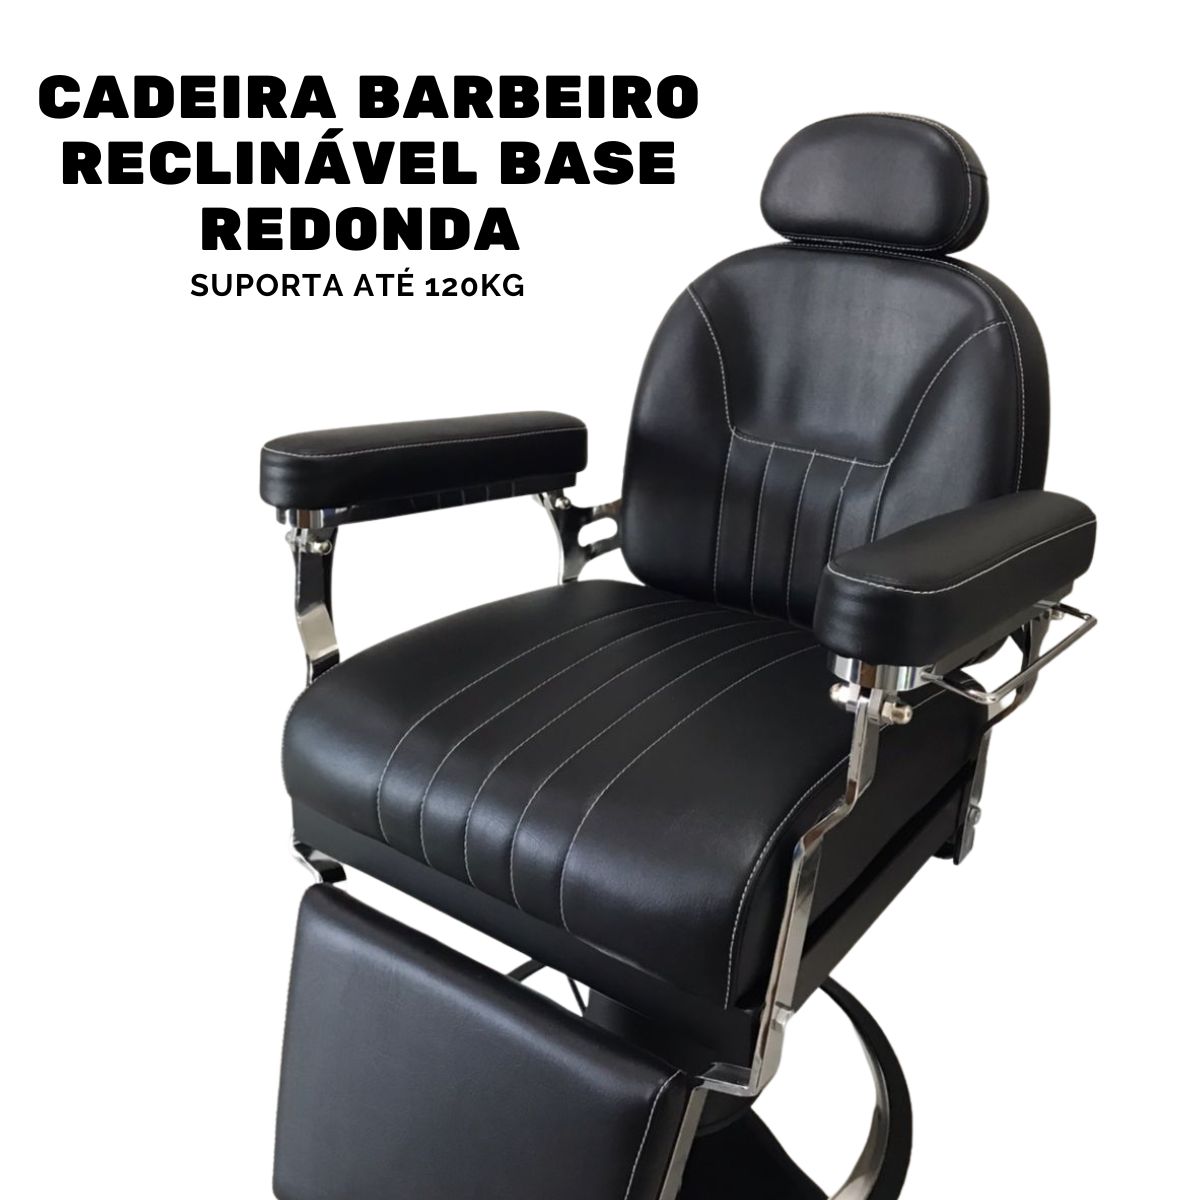 Cadeira Barbeiro Reclinável Base Redonda Marrom IWCBRBR002